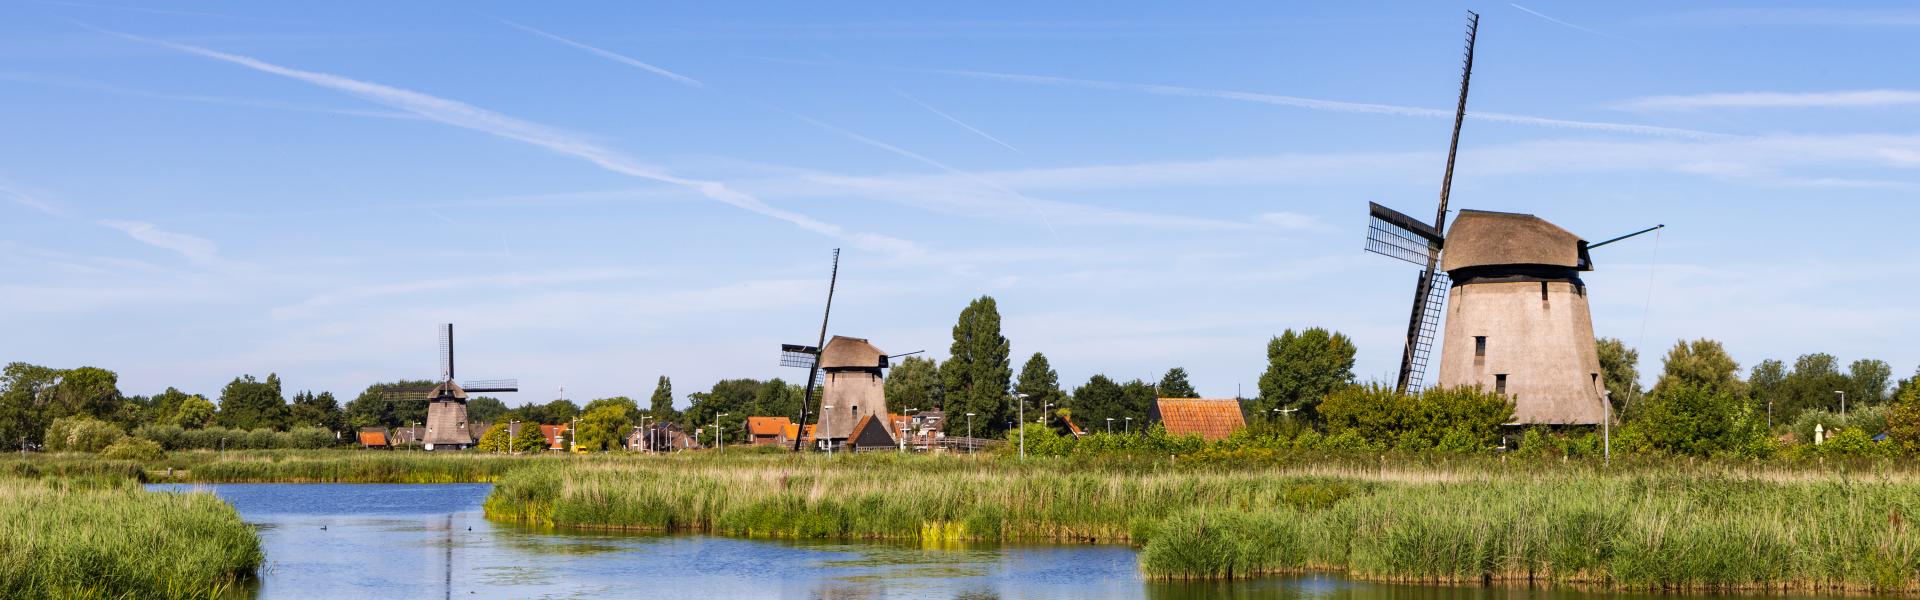 alkmaar Scenic View